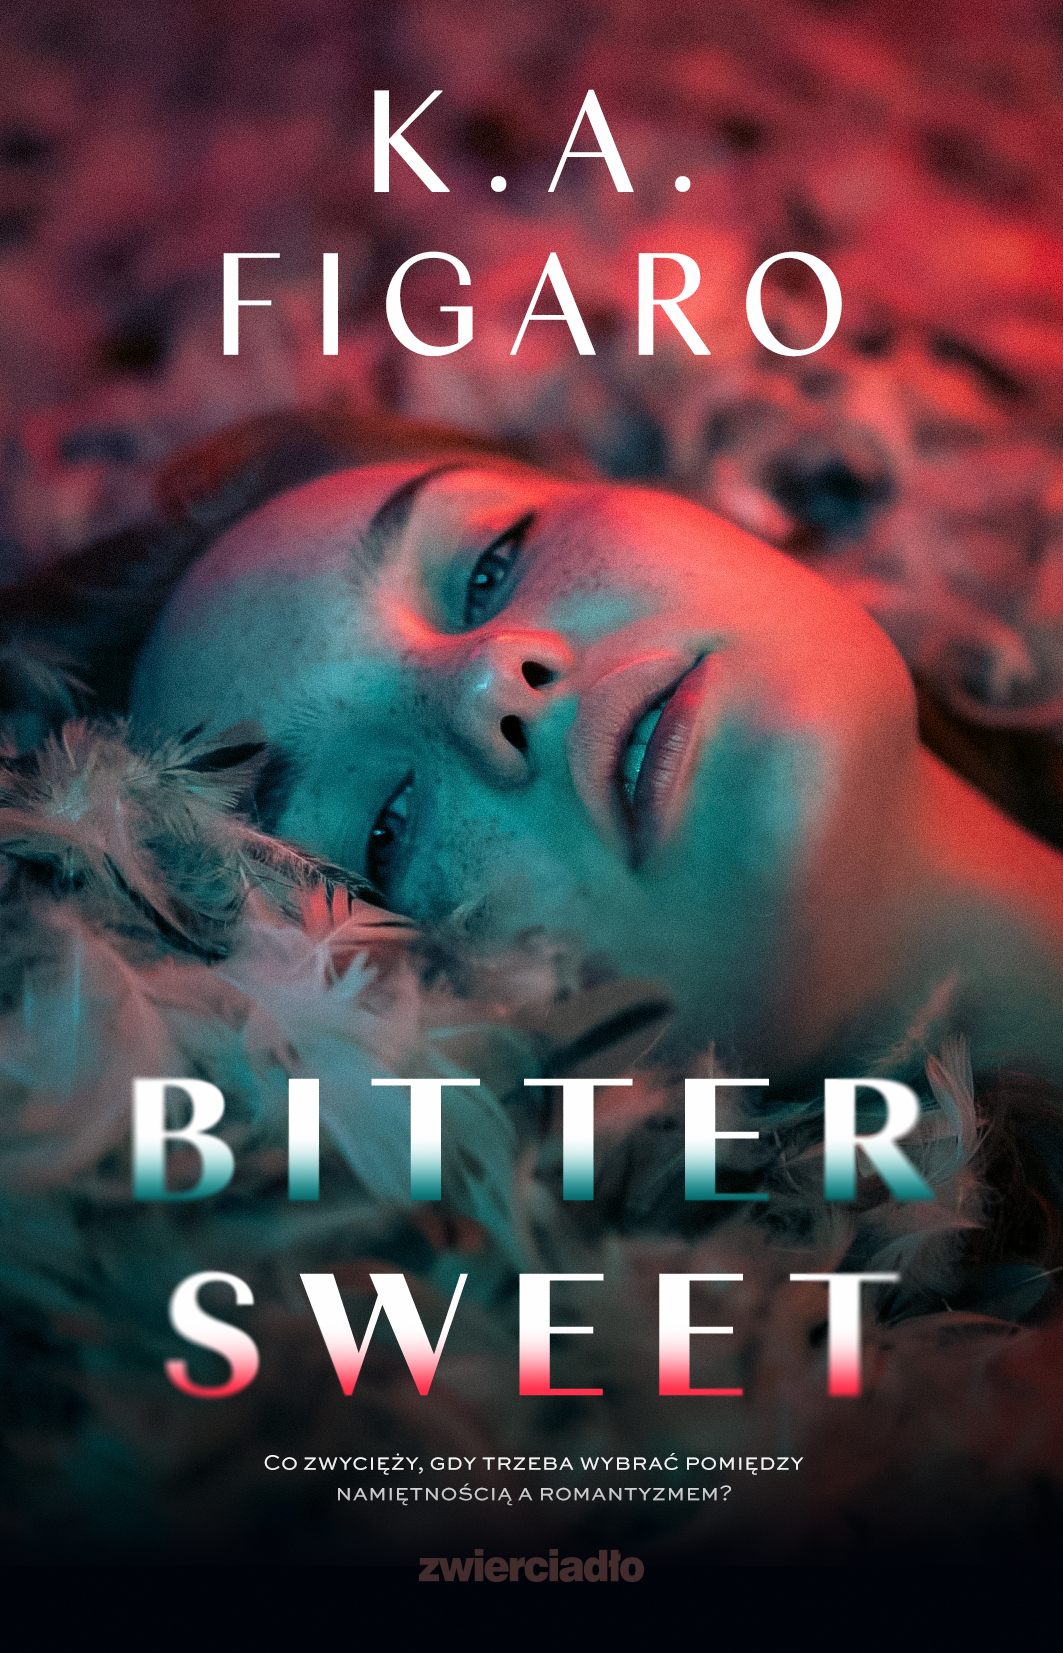 Bittersweet - K.A. Figaro 